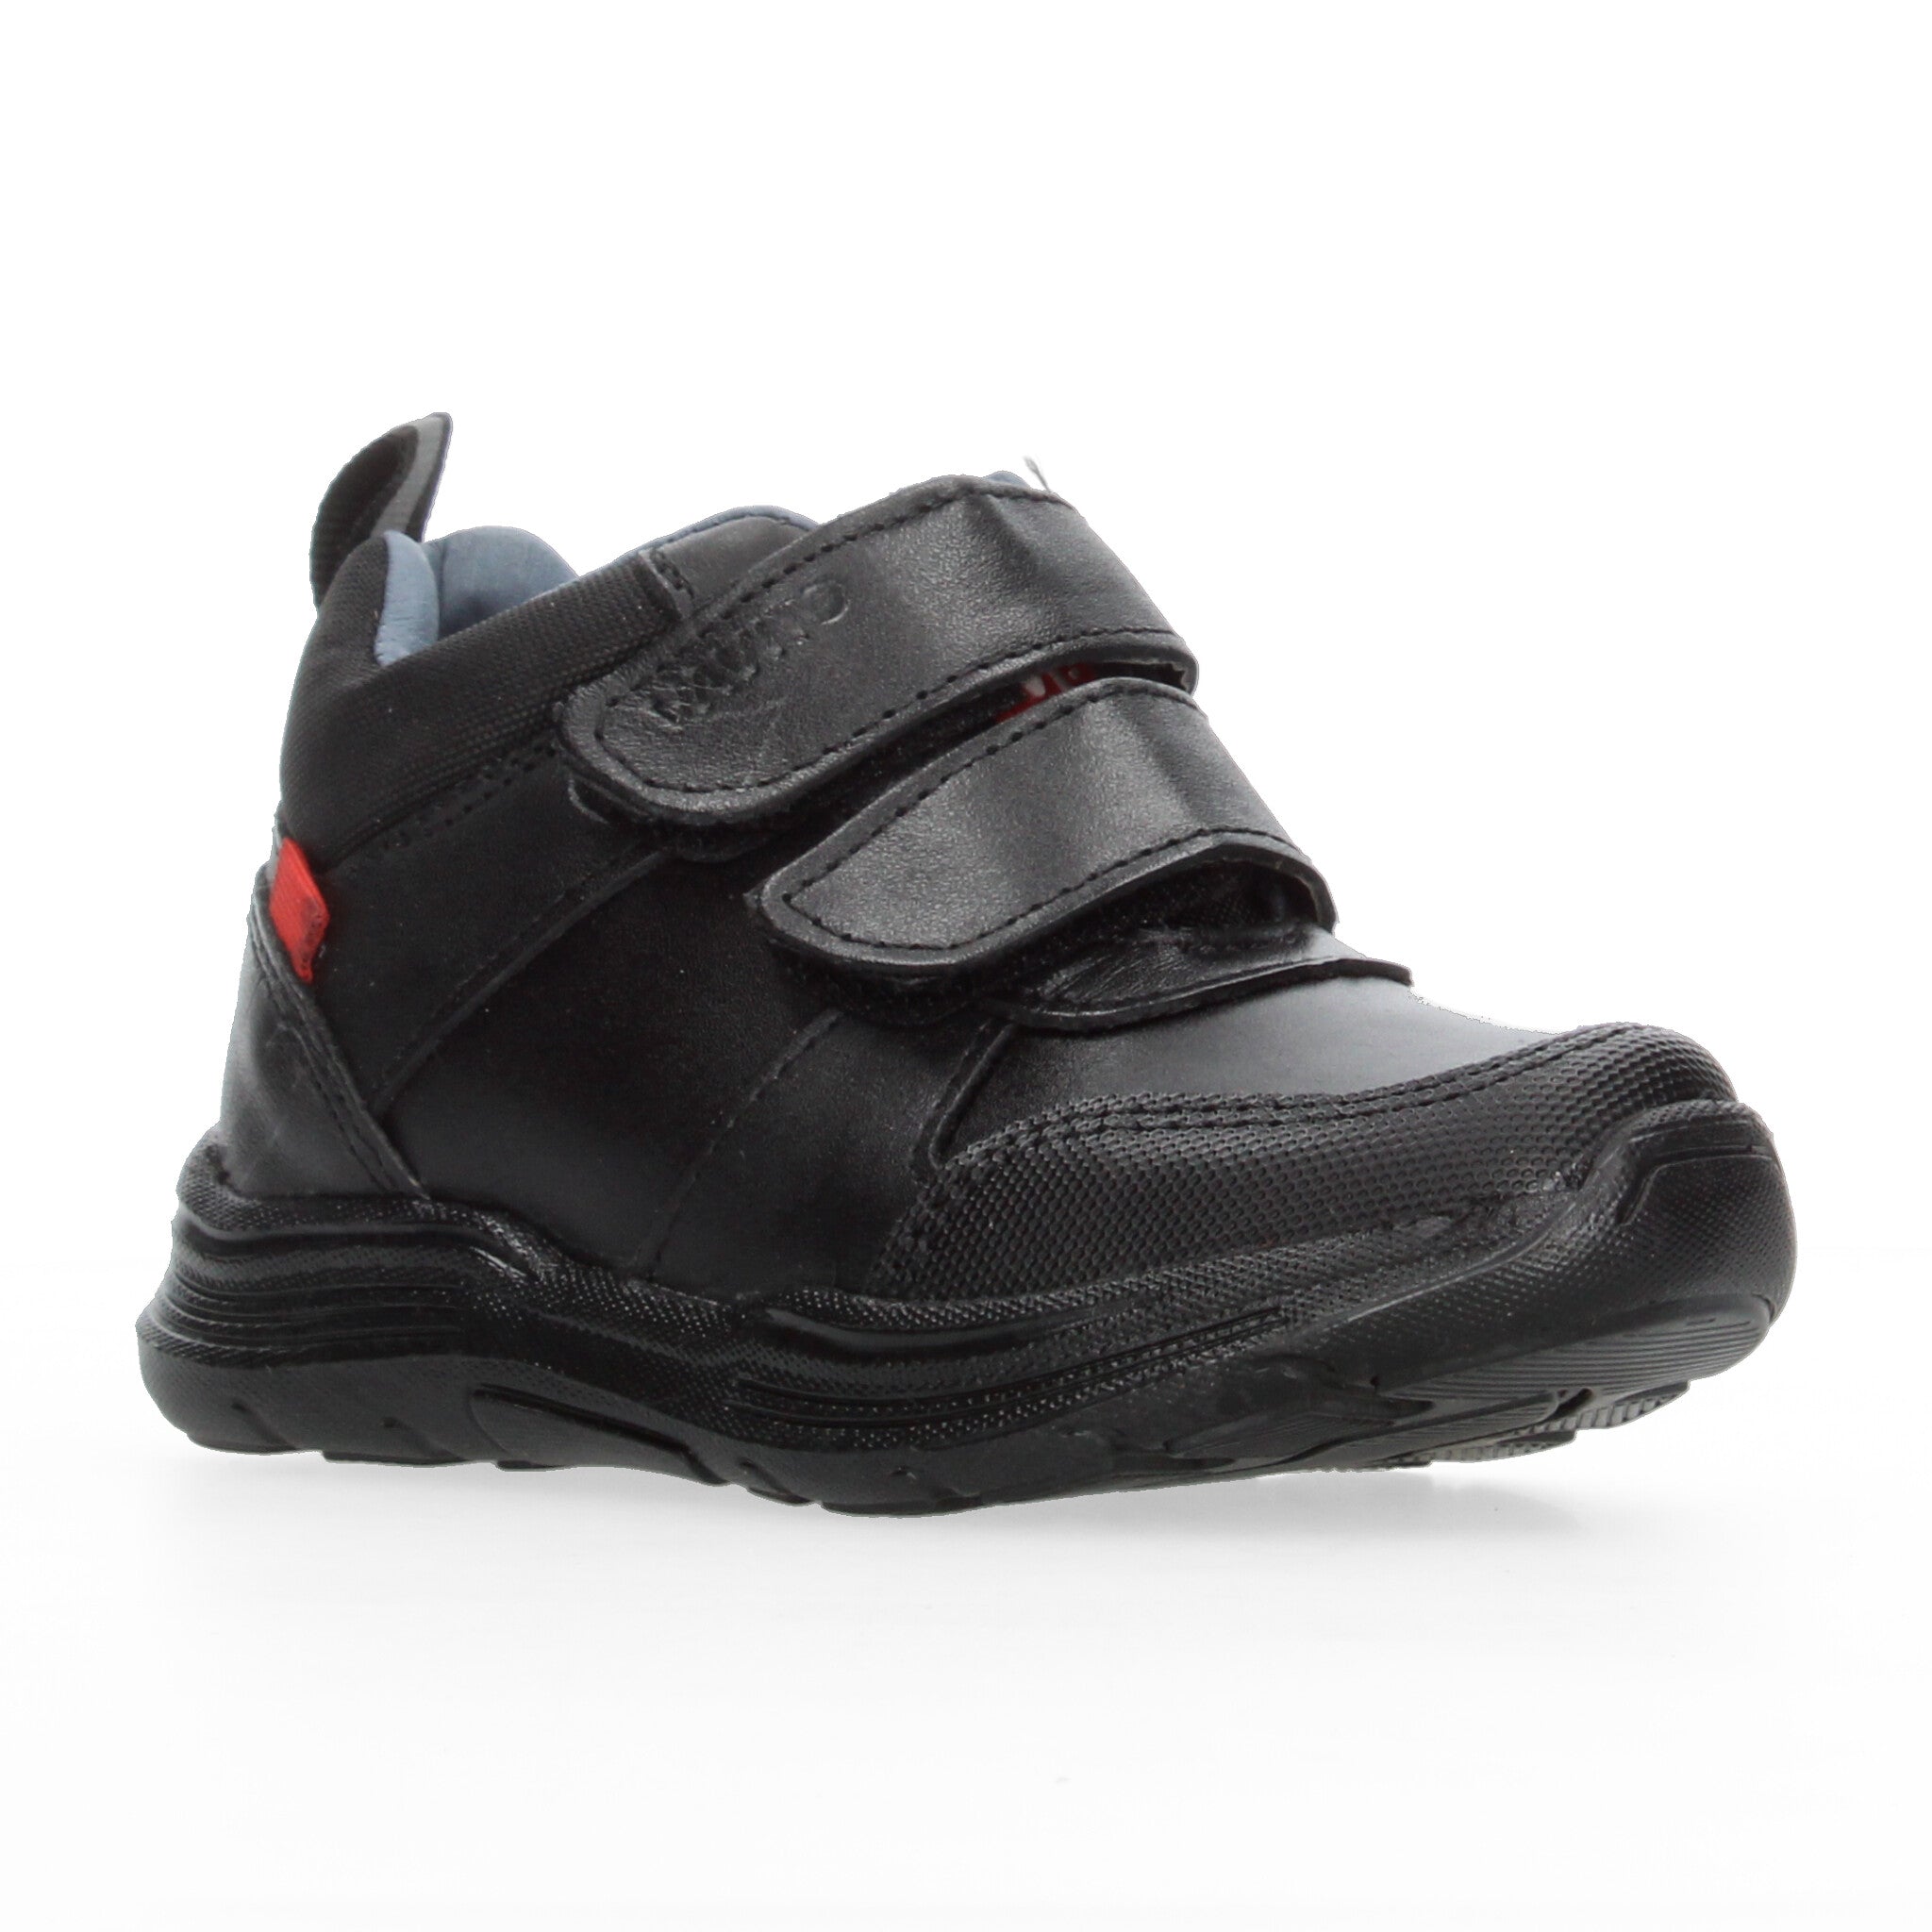 Zapato Escolar Vavito Negro para Niño [VVV1100]